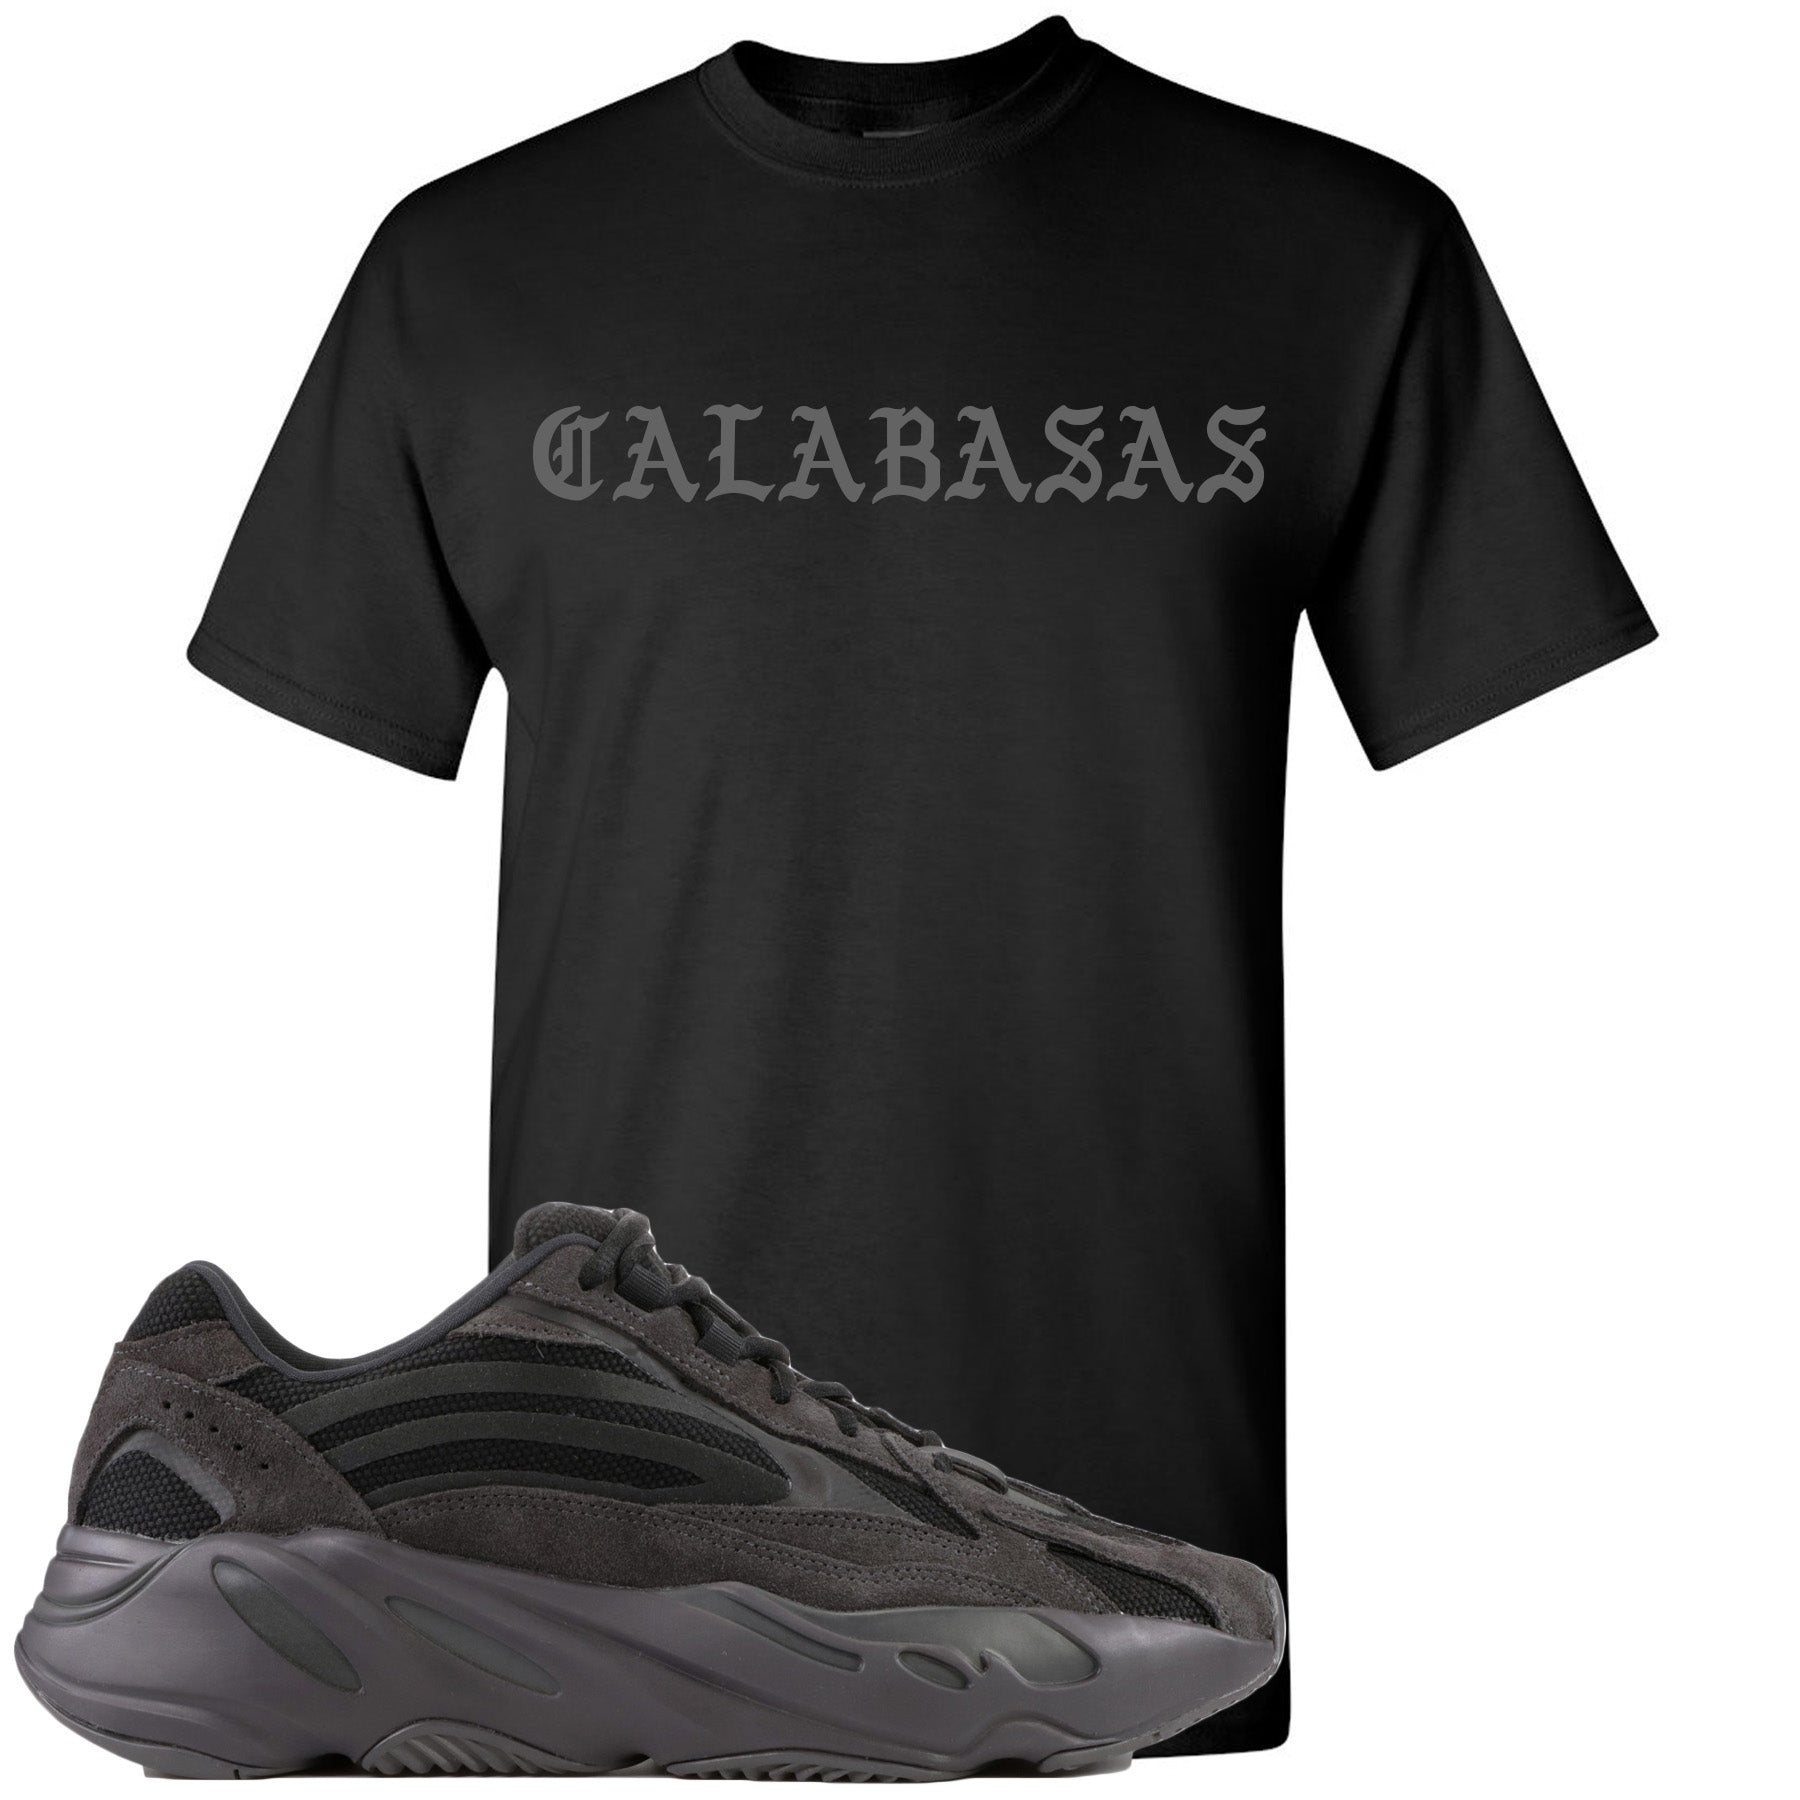 calabasas yeezy shirt